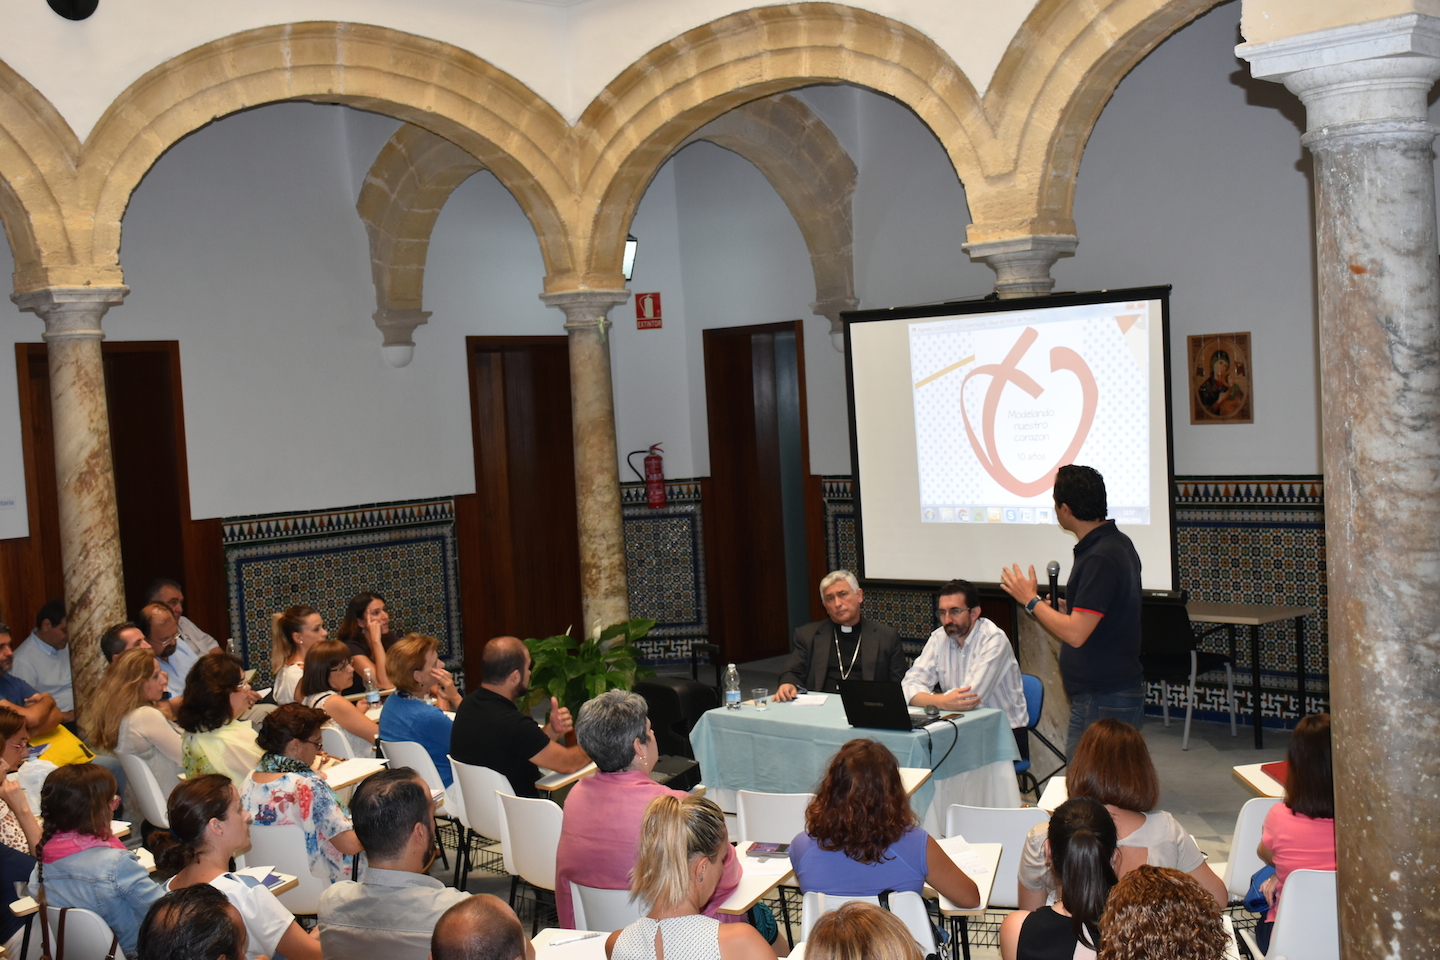 Óscar Rivas, director de Comunicación, presentó el logo y el lema del X aniversario de Educatio Servanda